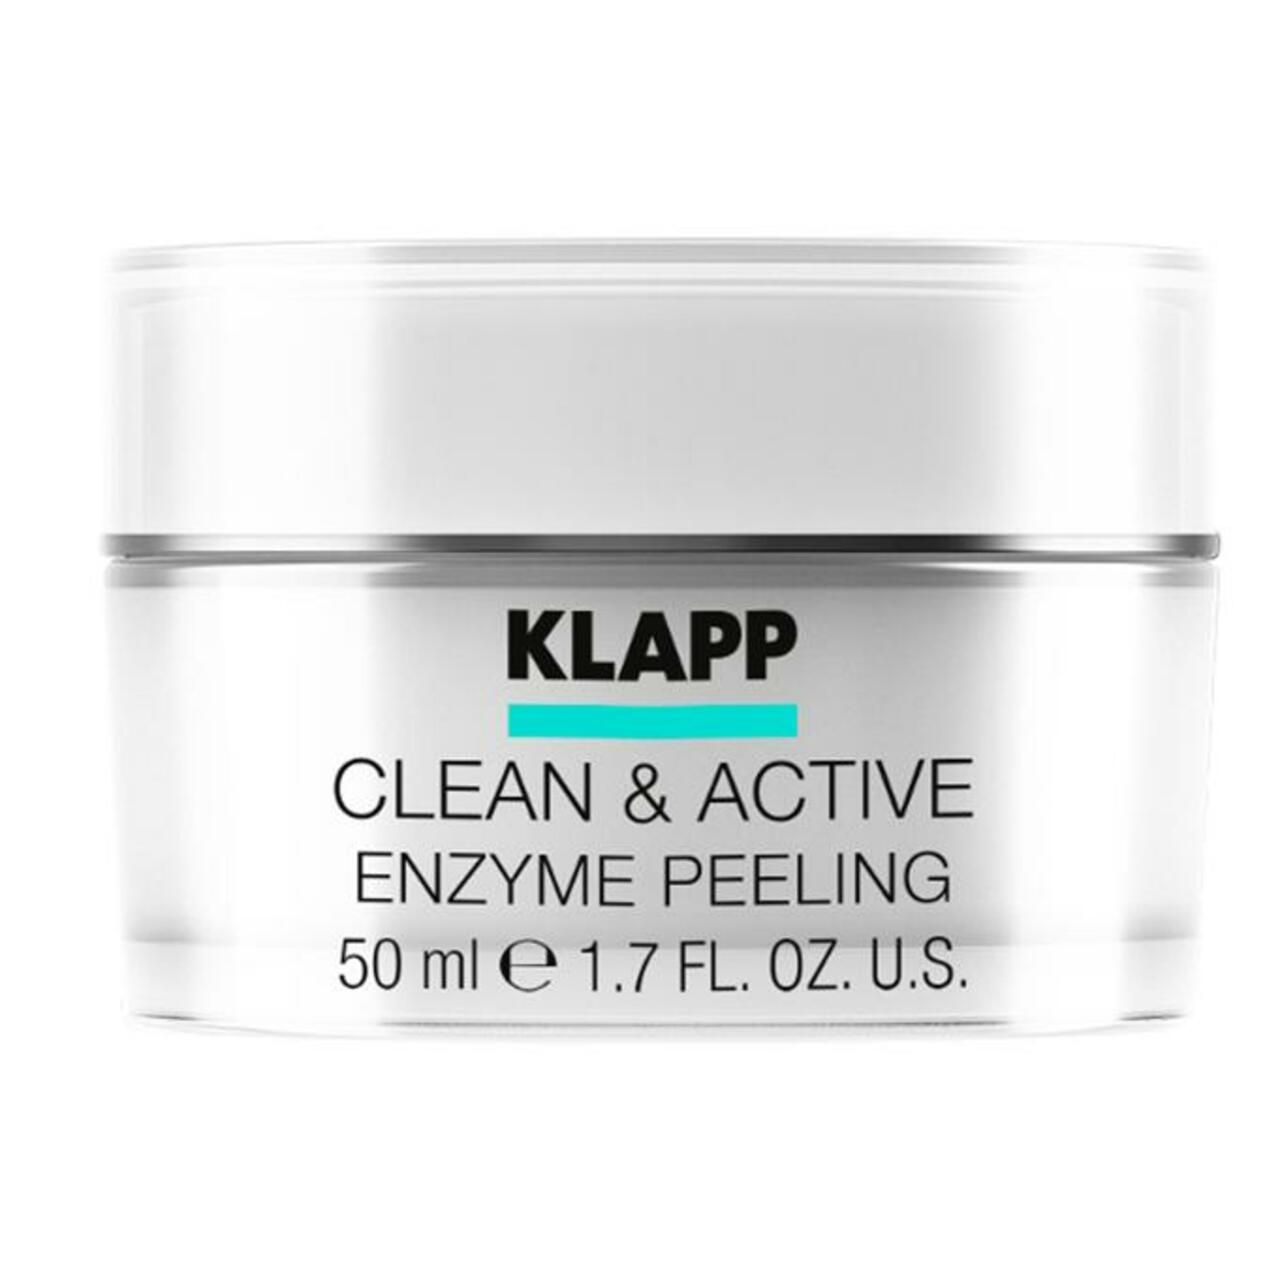 Klapp, Clean & Active Enzyme Peeling